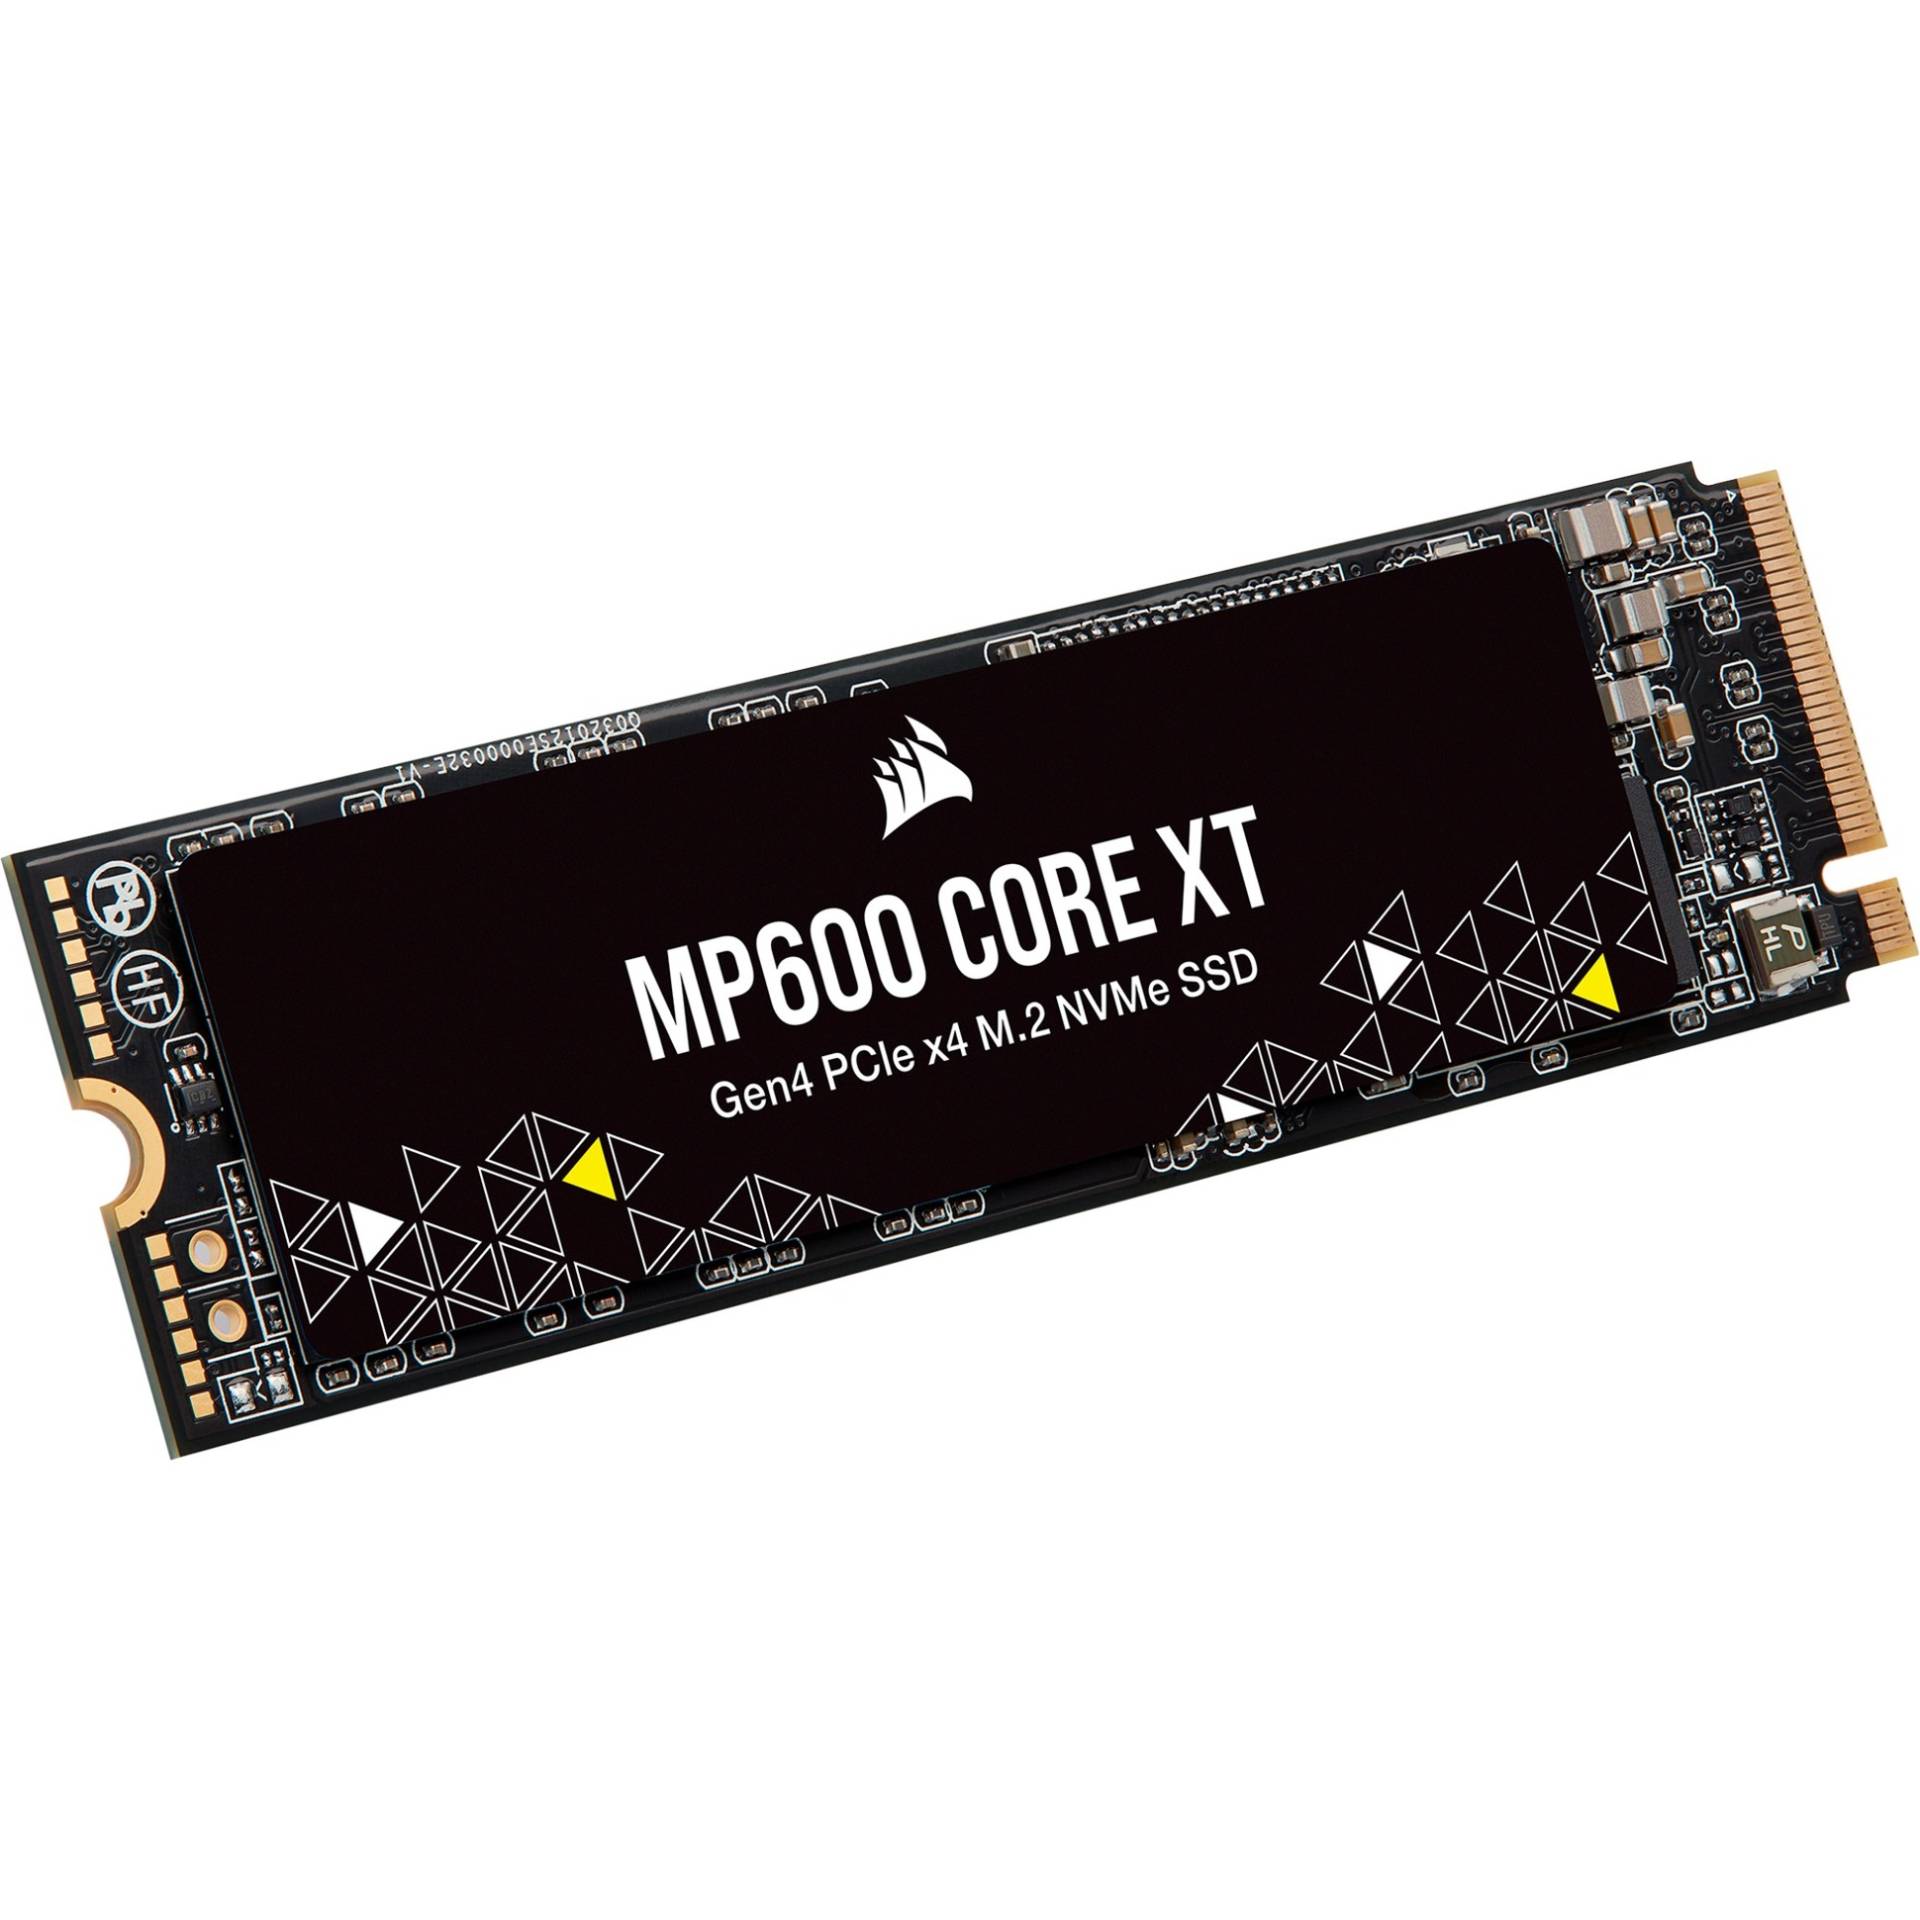 MP600 CORE XT 4 TB, SSD von Corsair